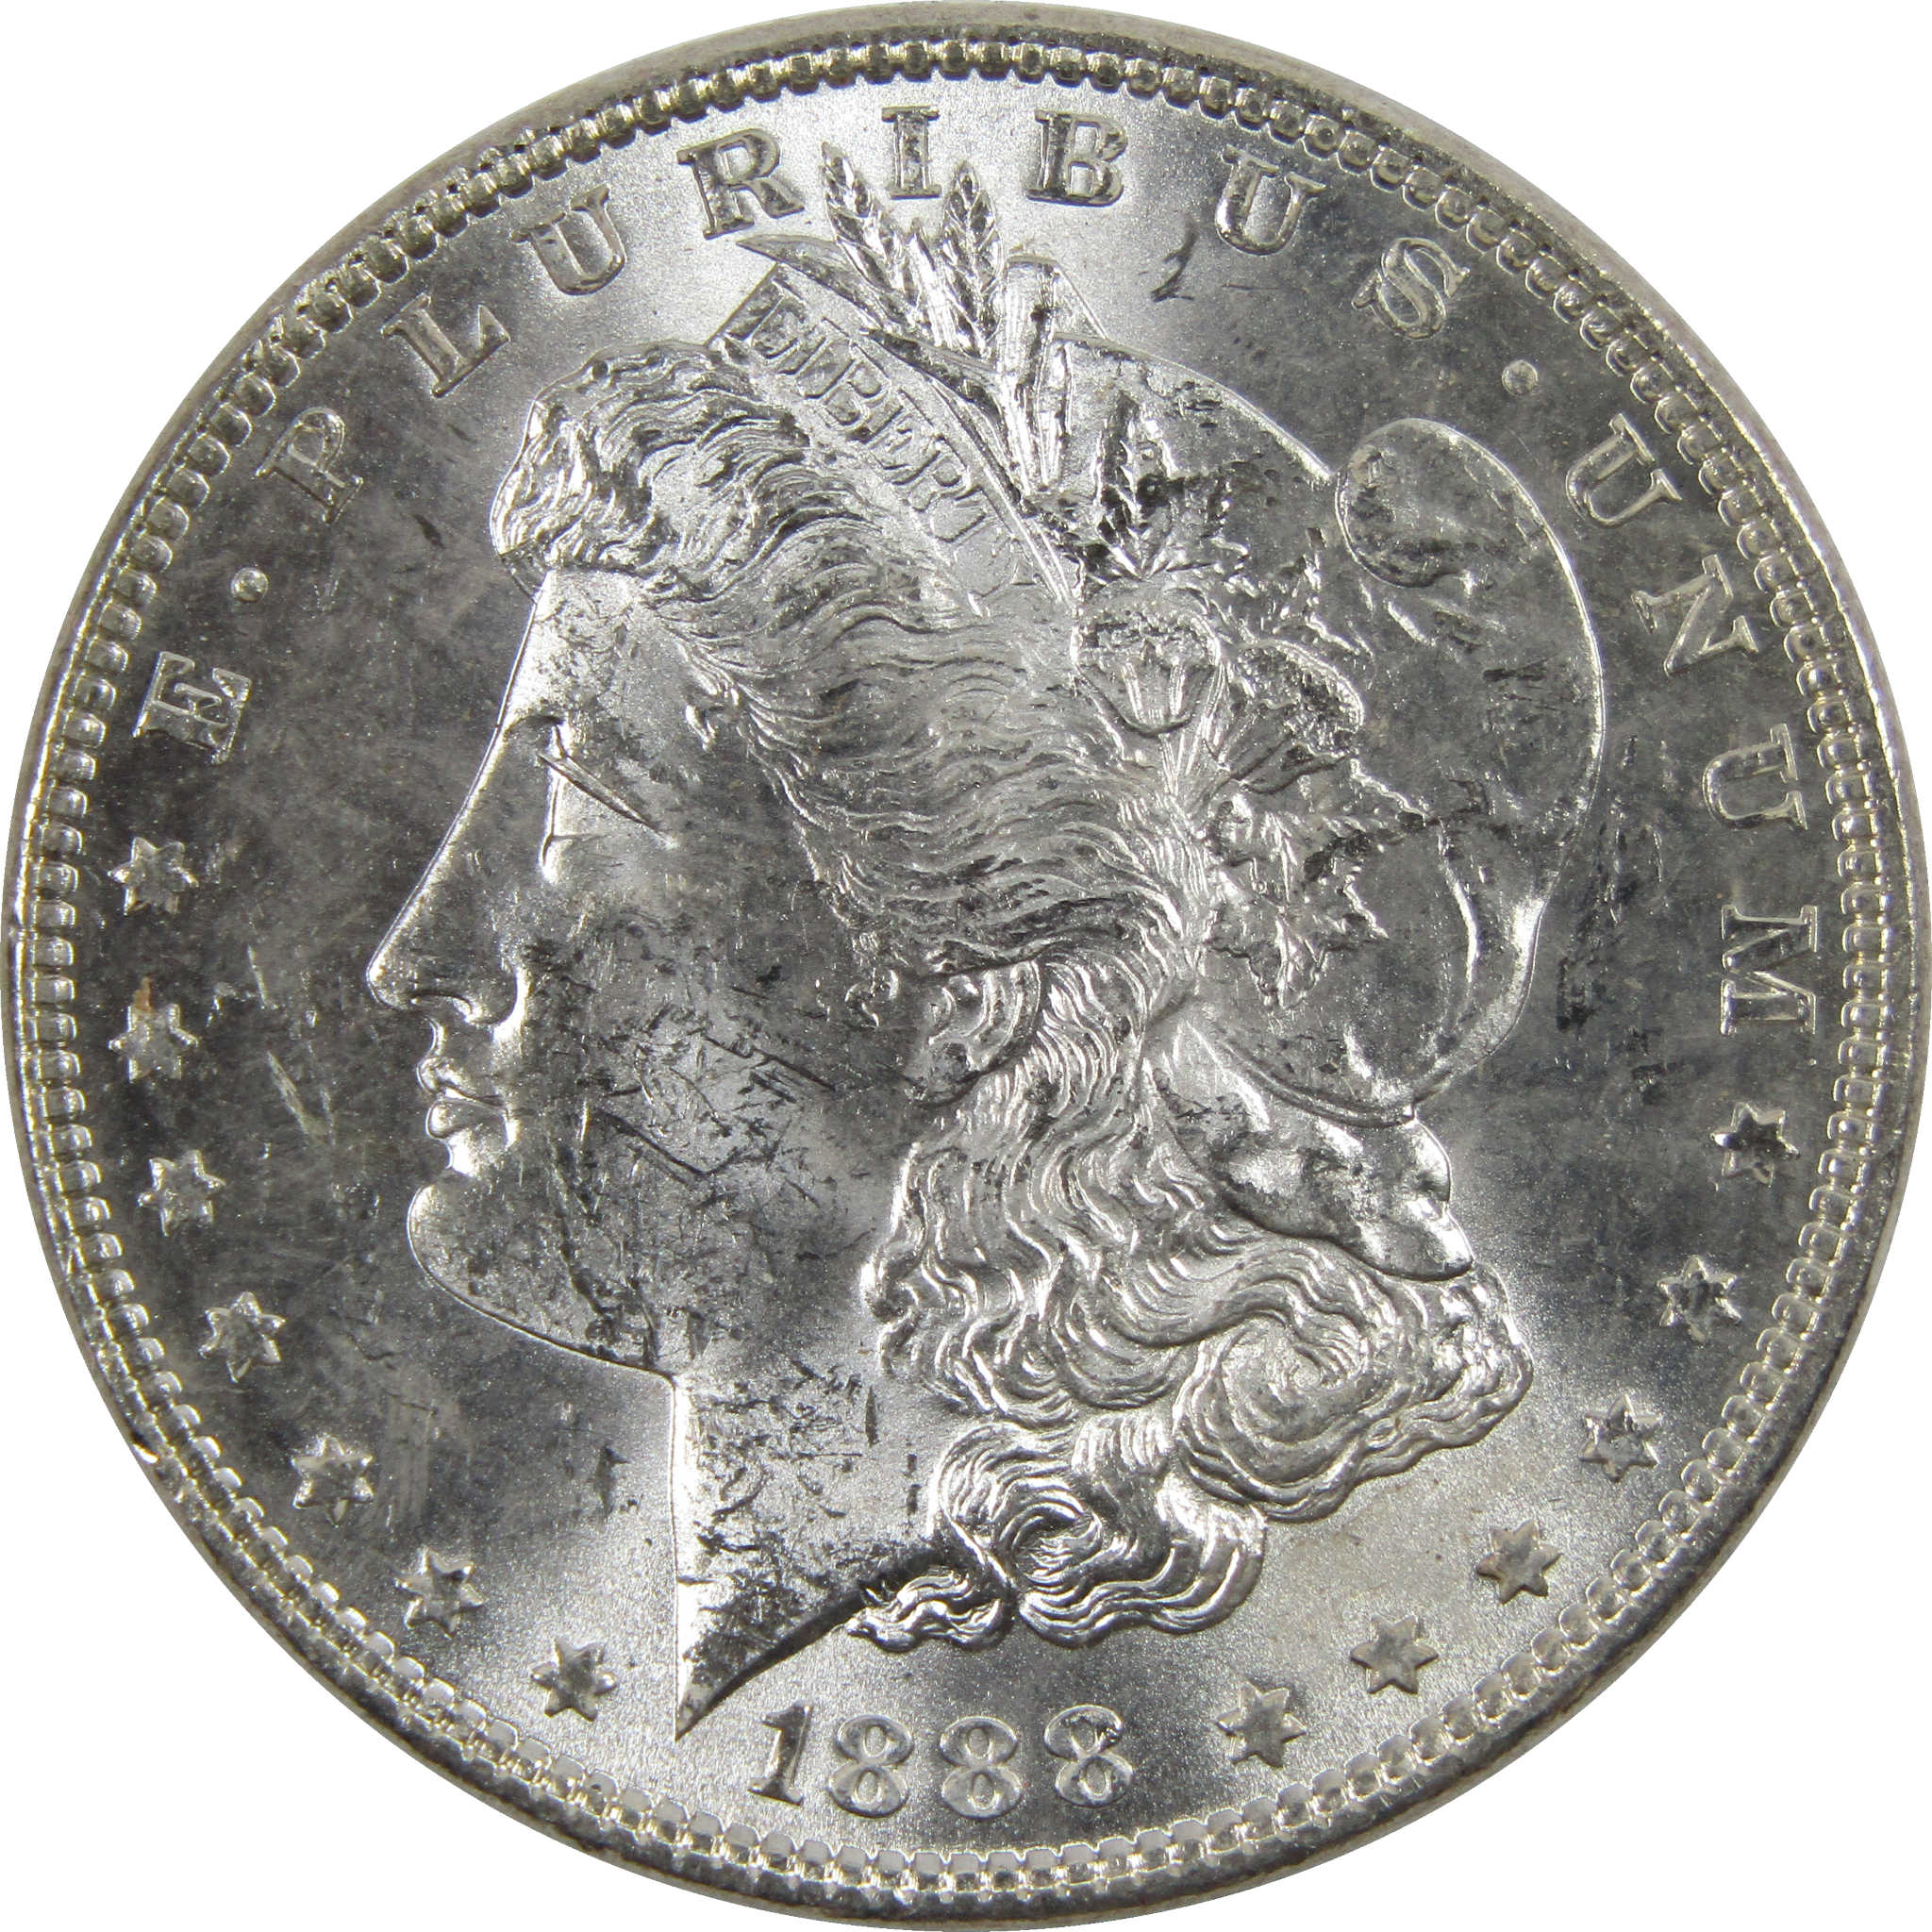 1888 Morgan Dollar BU Uncirculated 90% Silver $1 Coin SKU:I6033 - Morgan coin - Morgan silver dollar - Morgan silver dollar for sale - Profile Coins &amp; Collectibles